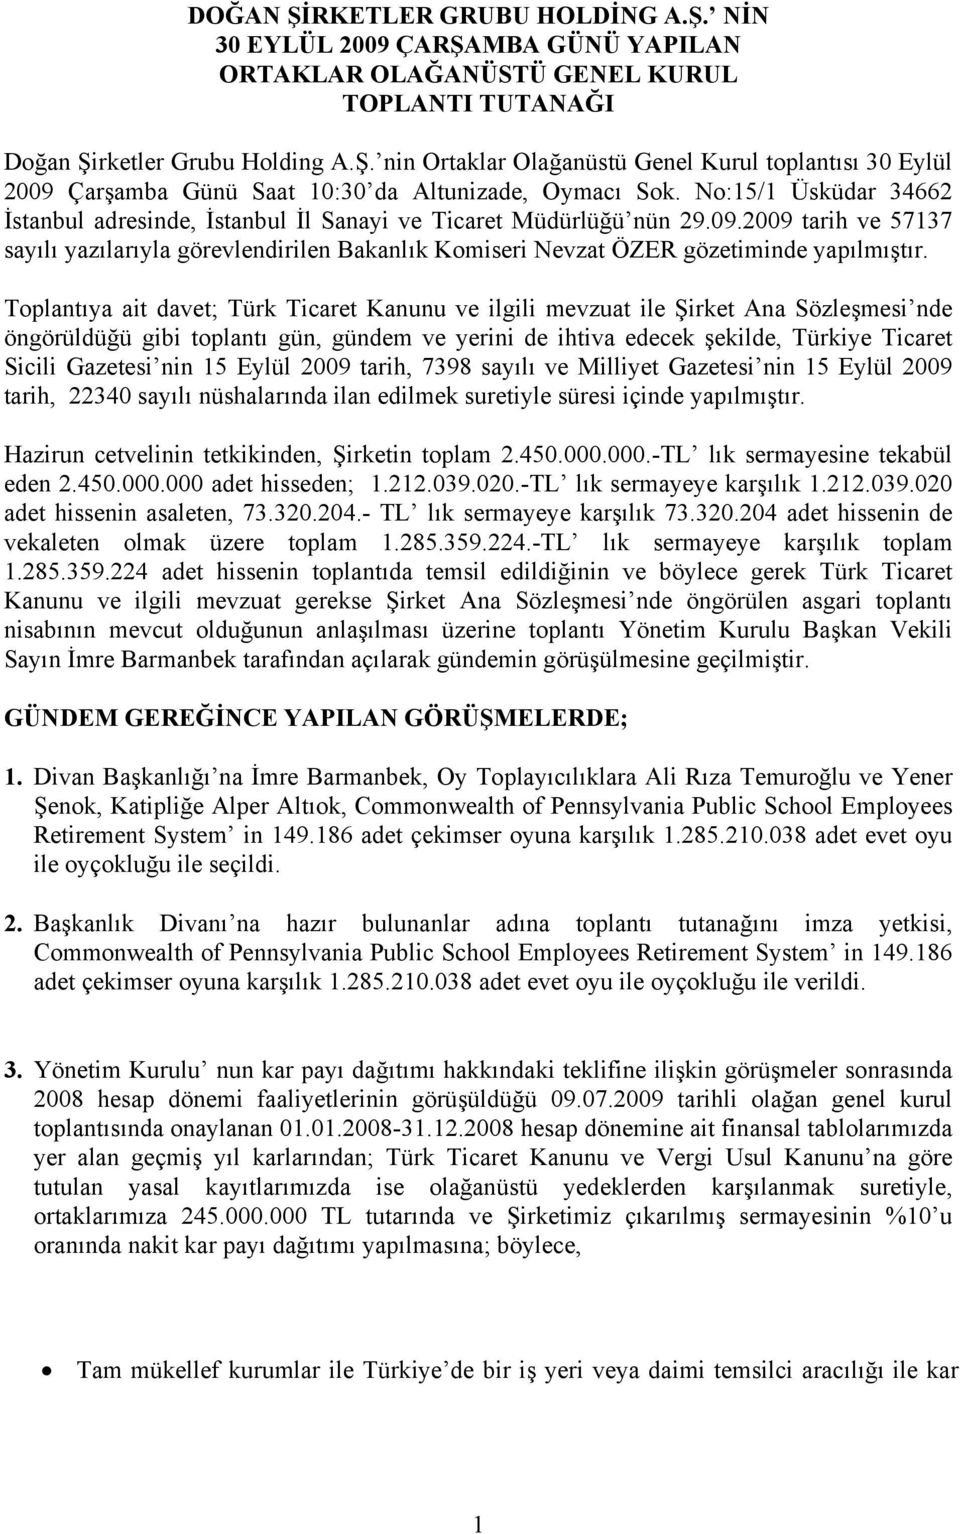 2009 tarih ve 57137 sayılı yazılarıyla görevlendirilen Bakanlık Komiseri Nevzat ÖZER gözetiminde yapılmıştır.